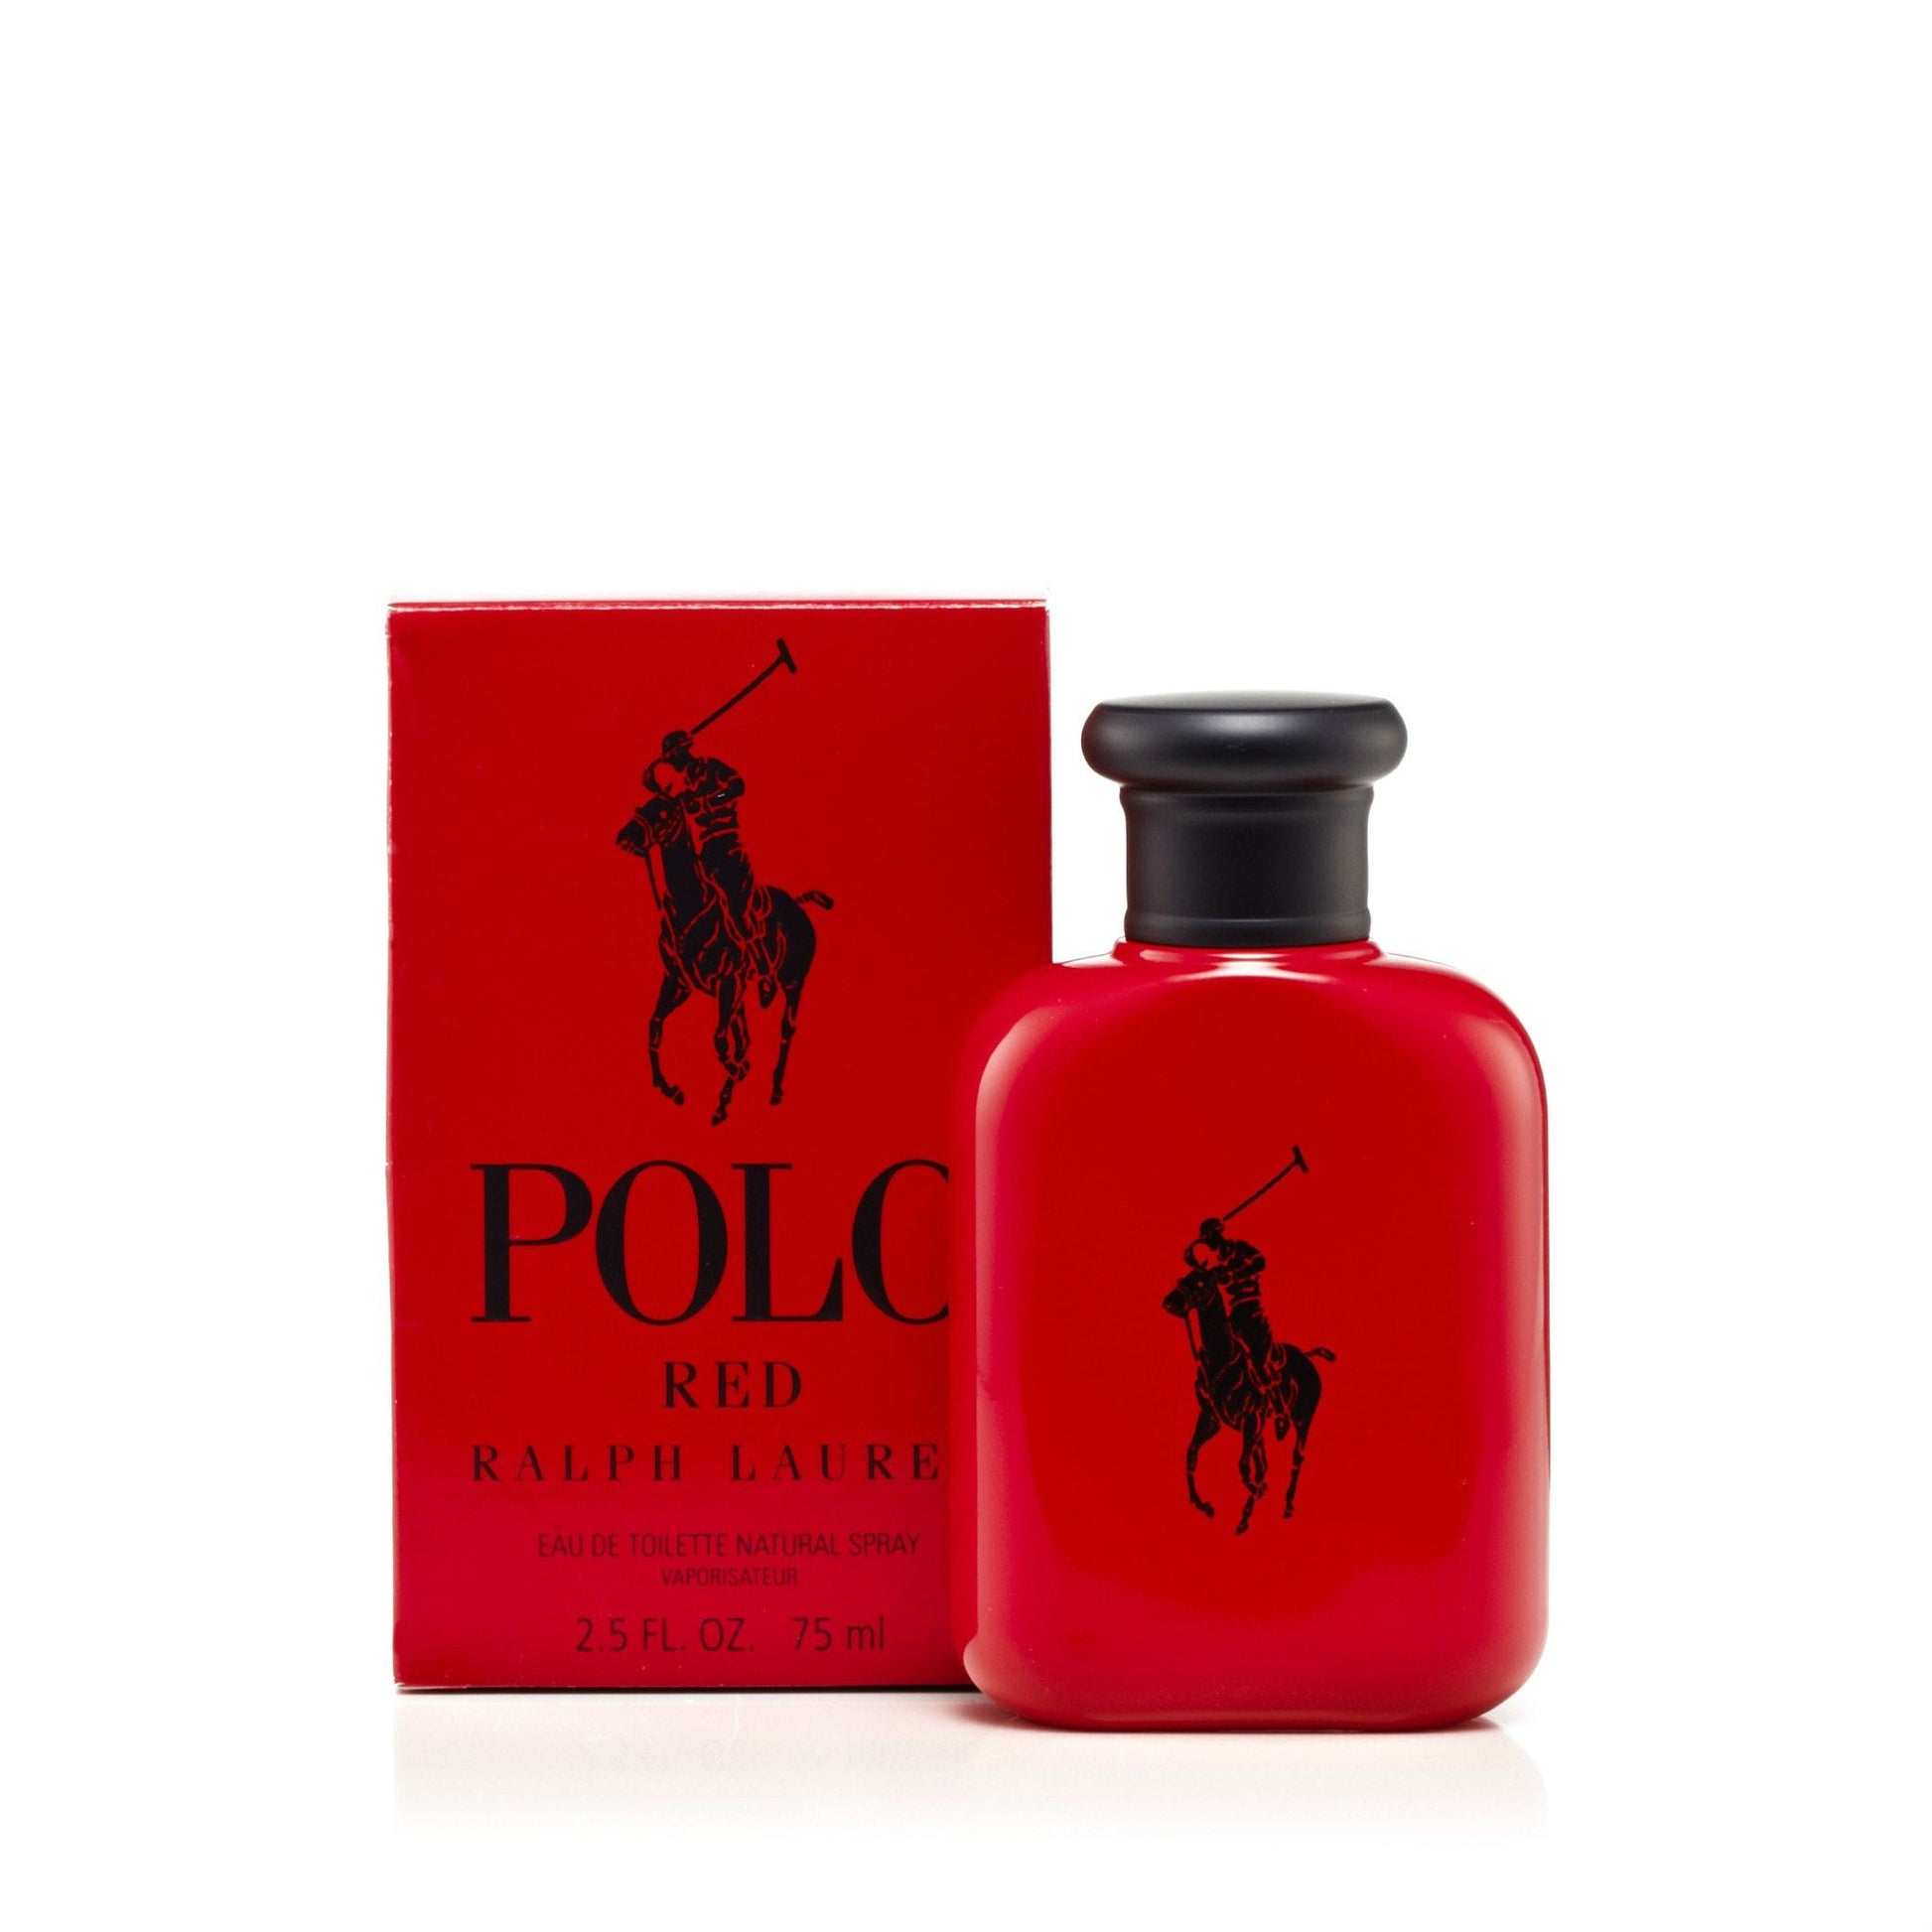 Polo Red Eau de Toilette Spray for Men by Ralph Lauren, Product image 5